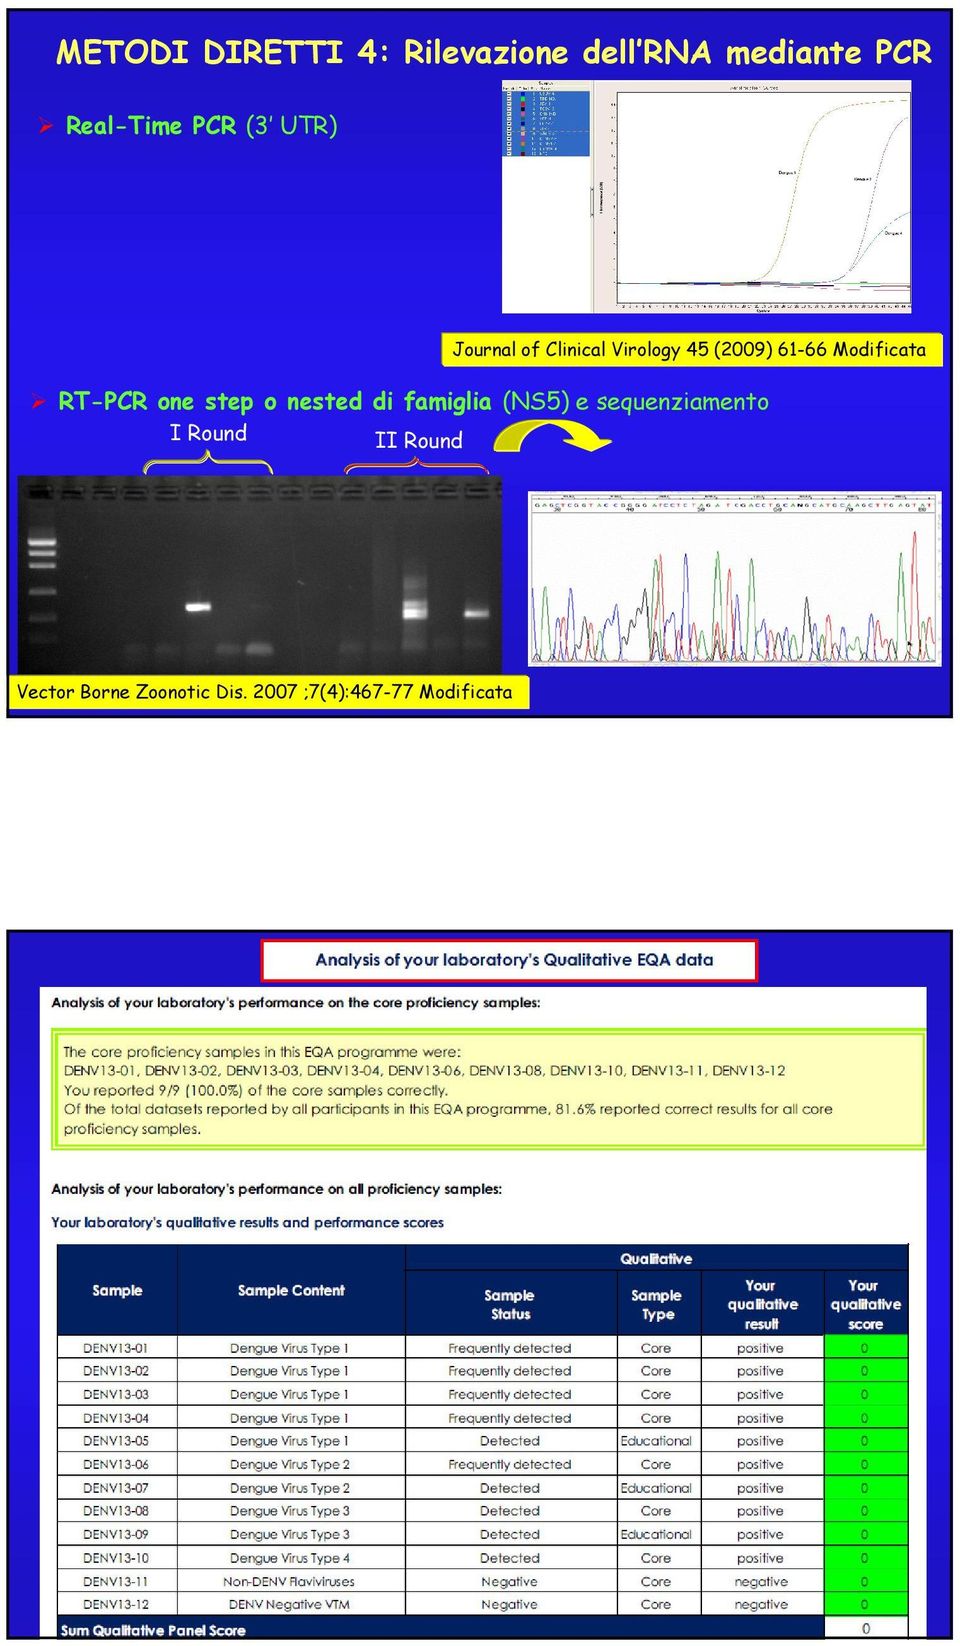 RT-PCR one step o nested di famiglia (NS5) e sequenziamento I